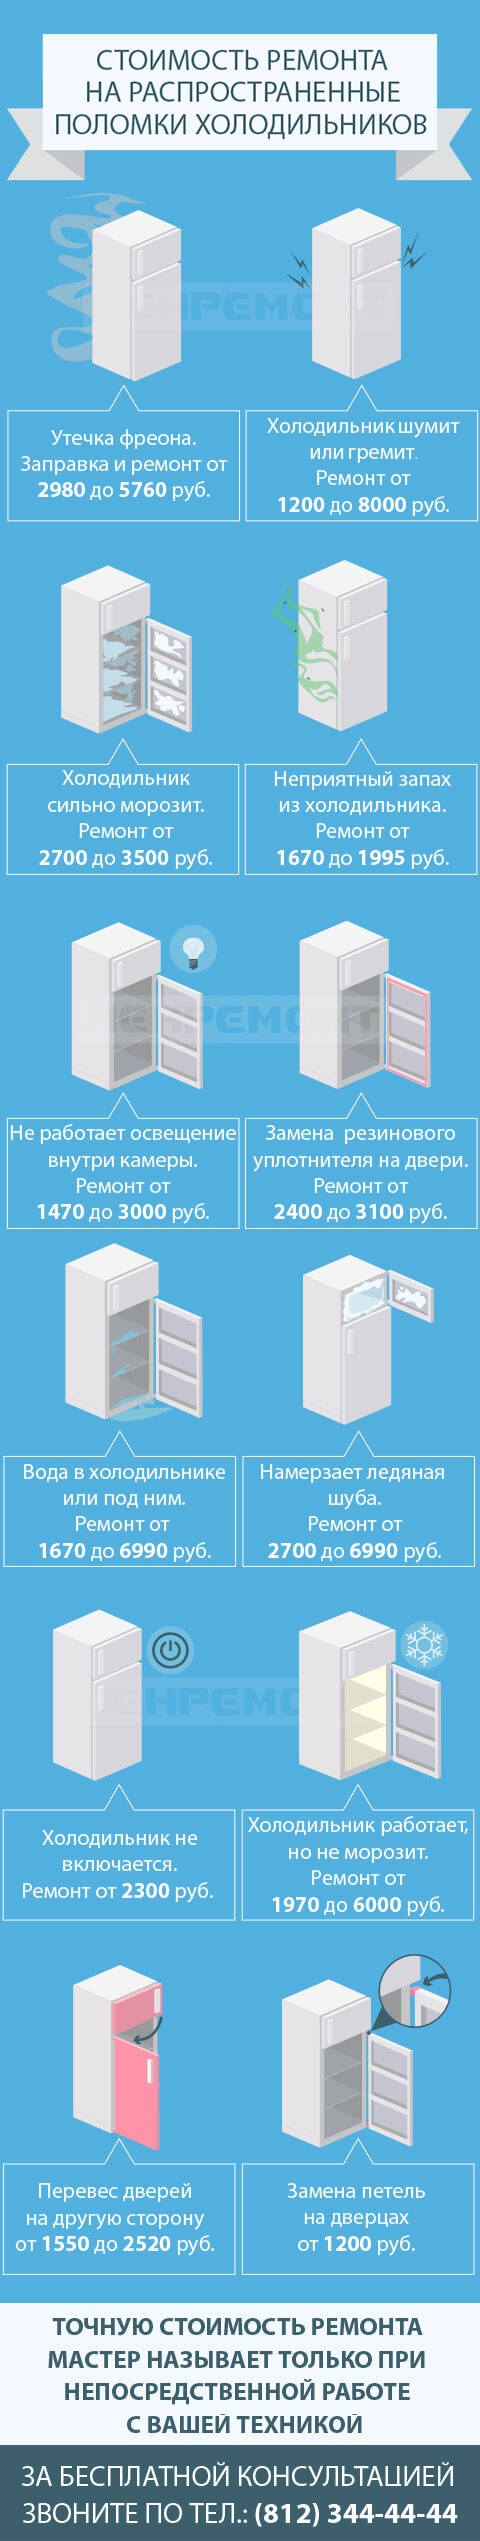 Срочный ремонт холодильников на дому в Санкт-Петербурге и Ленобласти